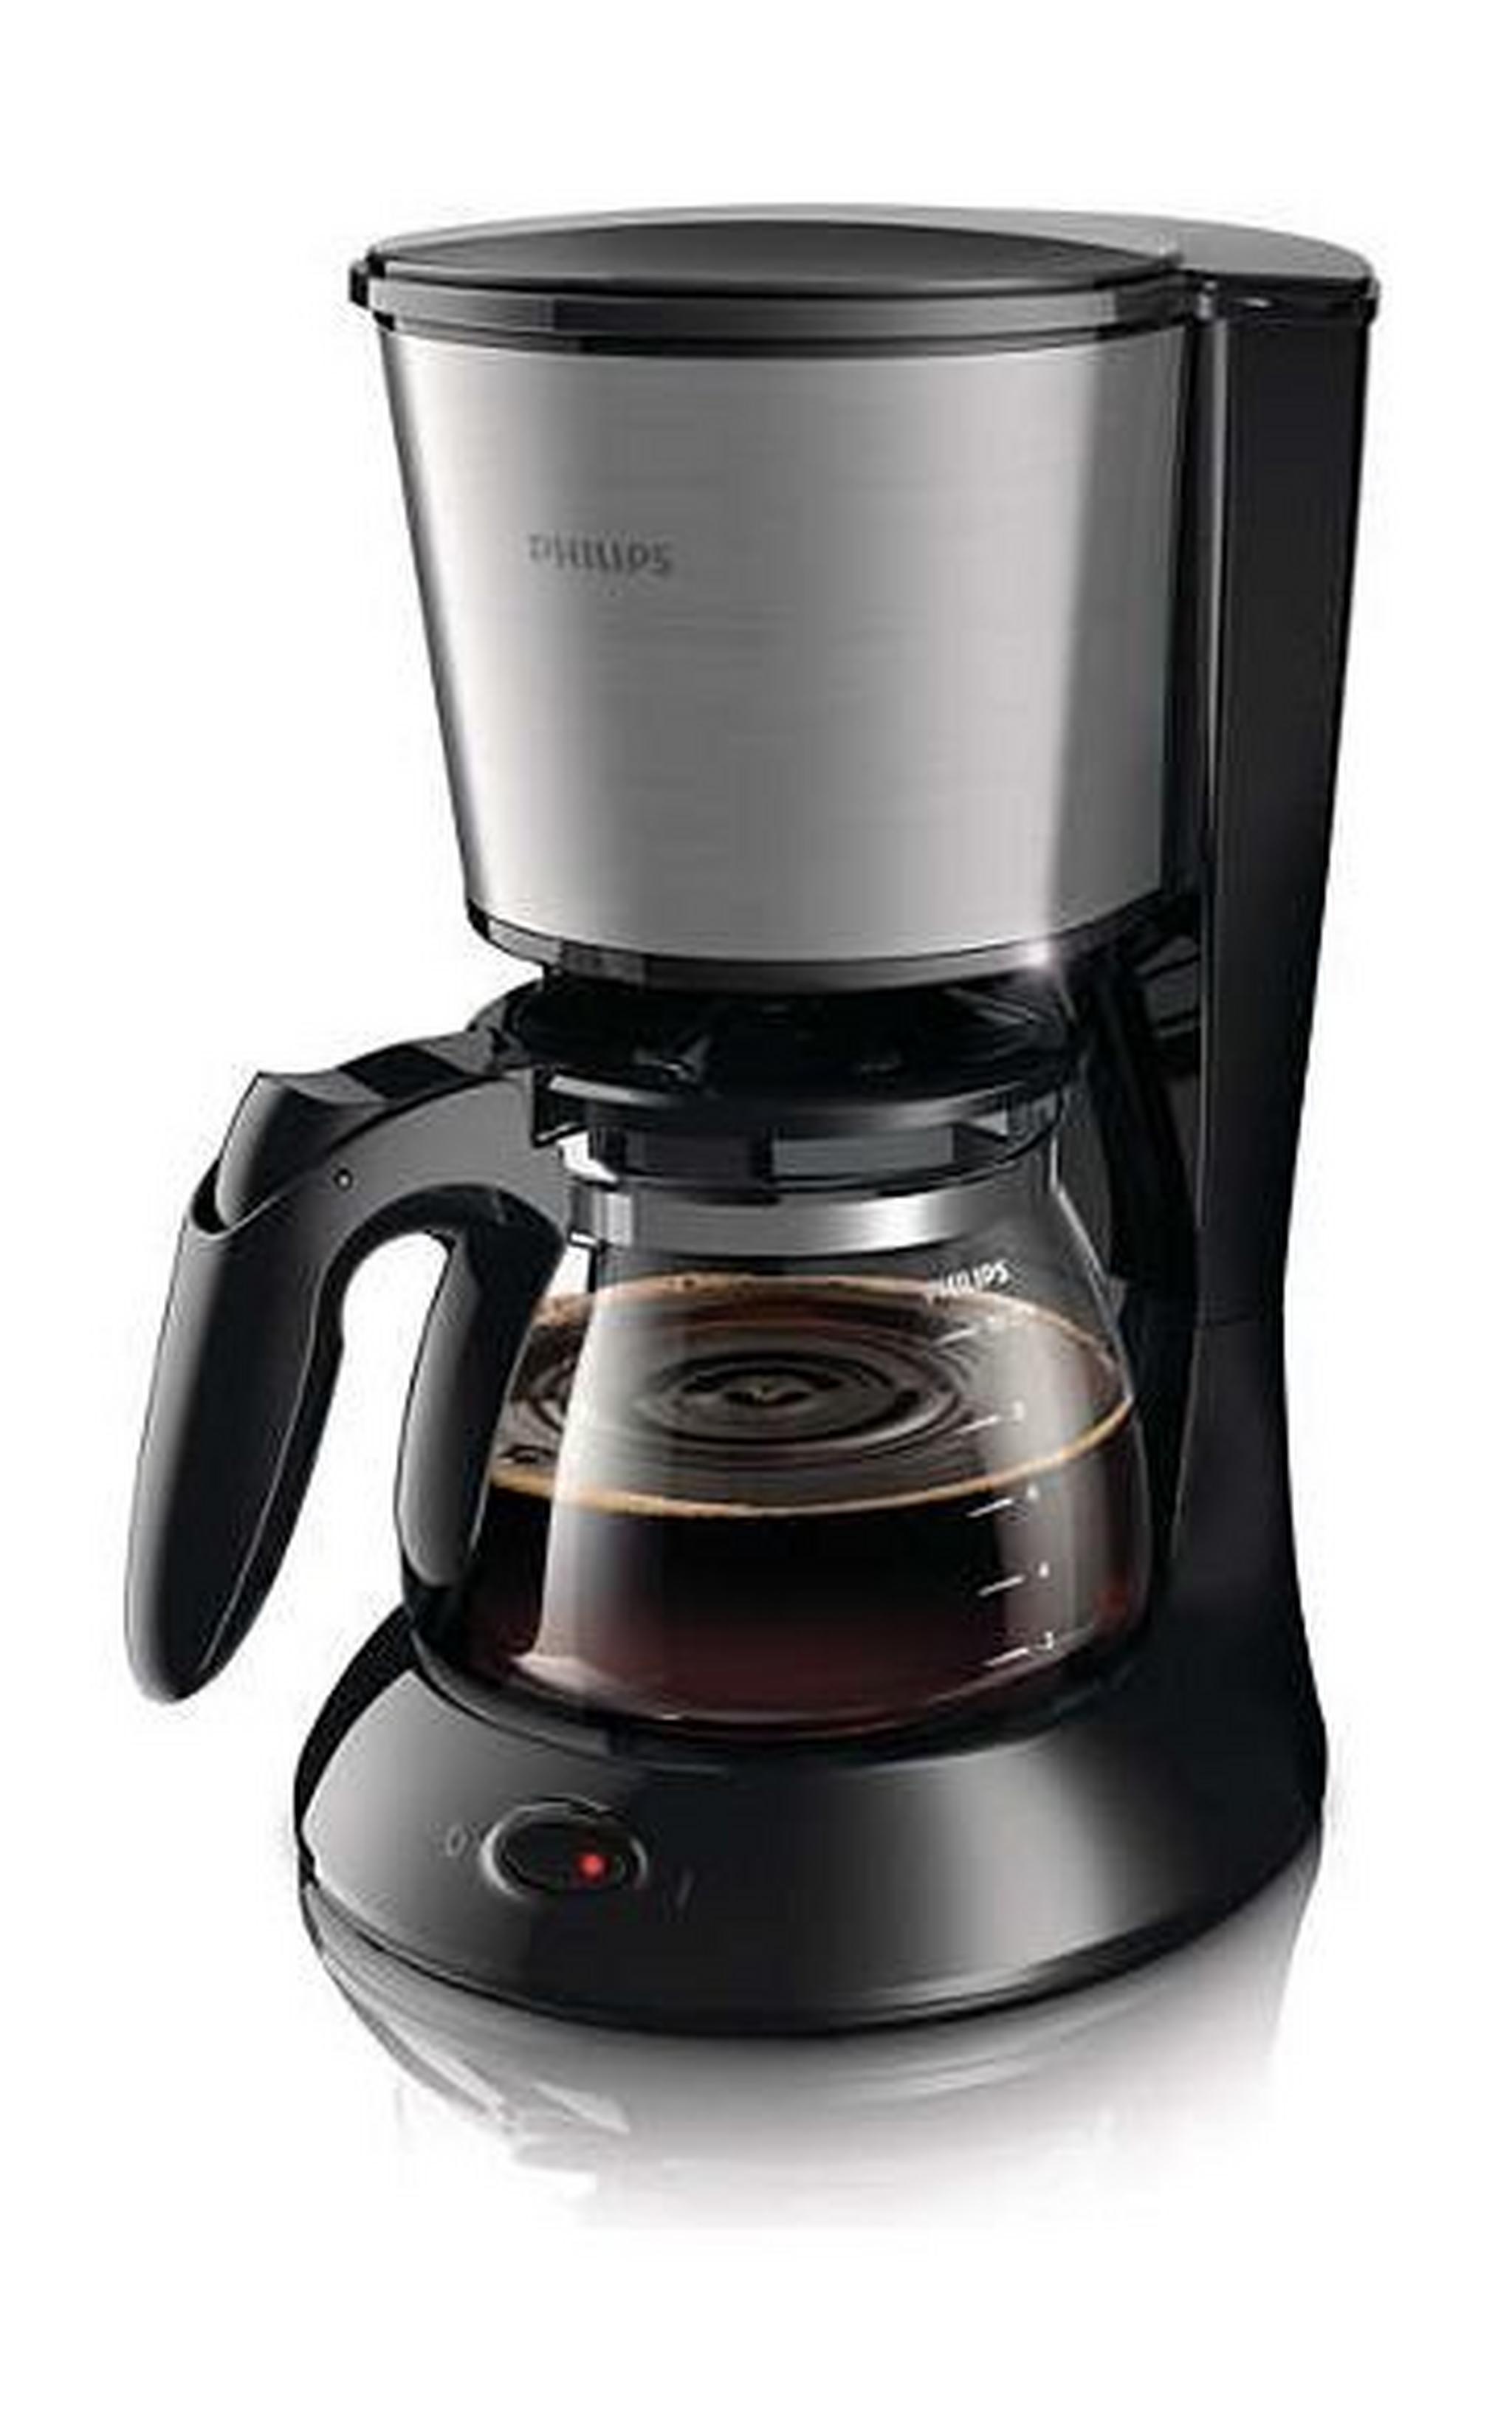 صانعة القهوة من فيليبس  HD7457/20 ١٠٠ واط - أسود